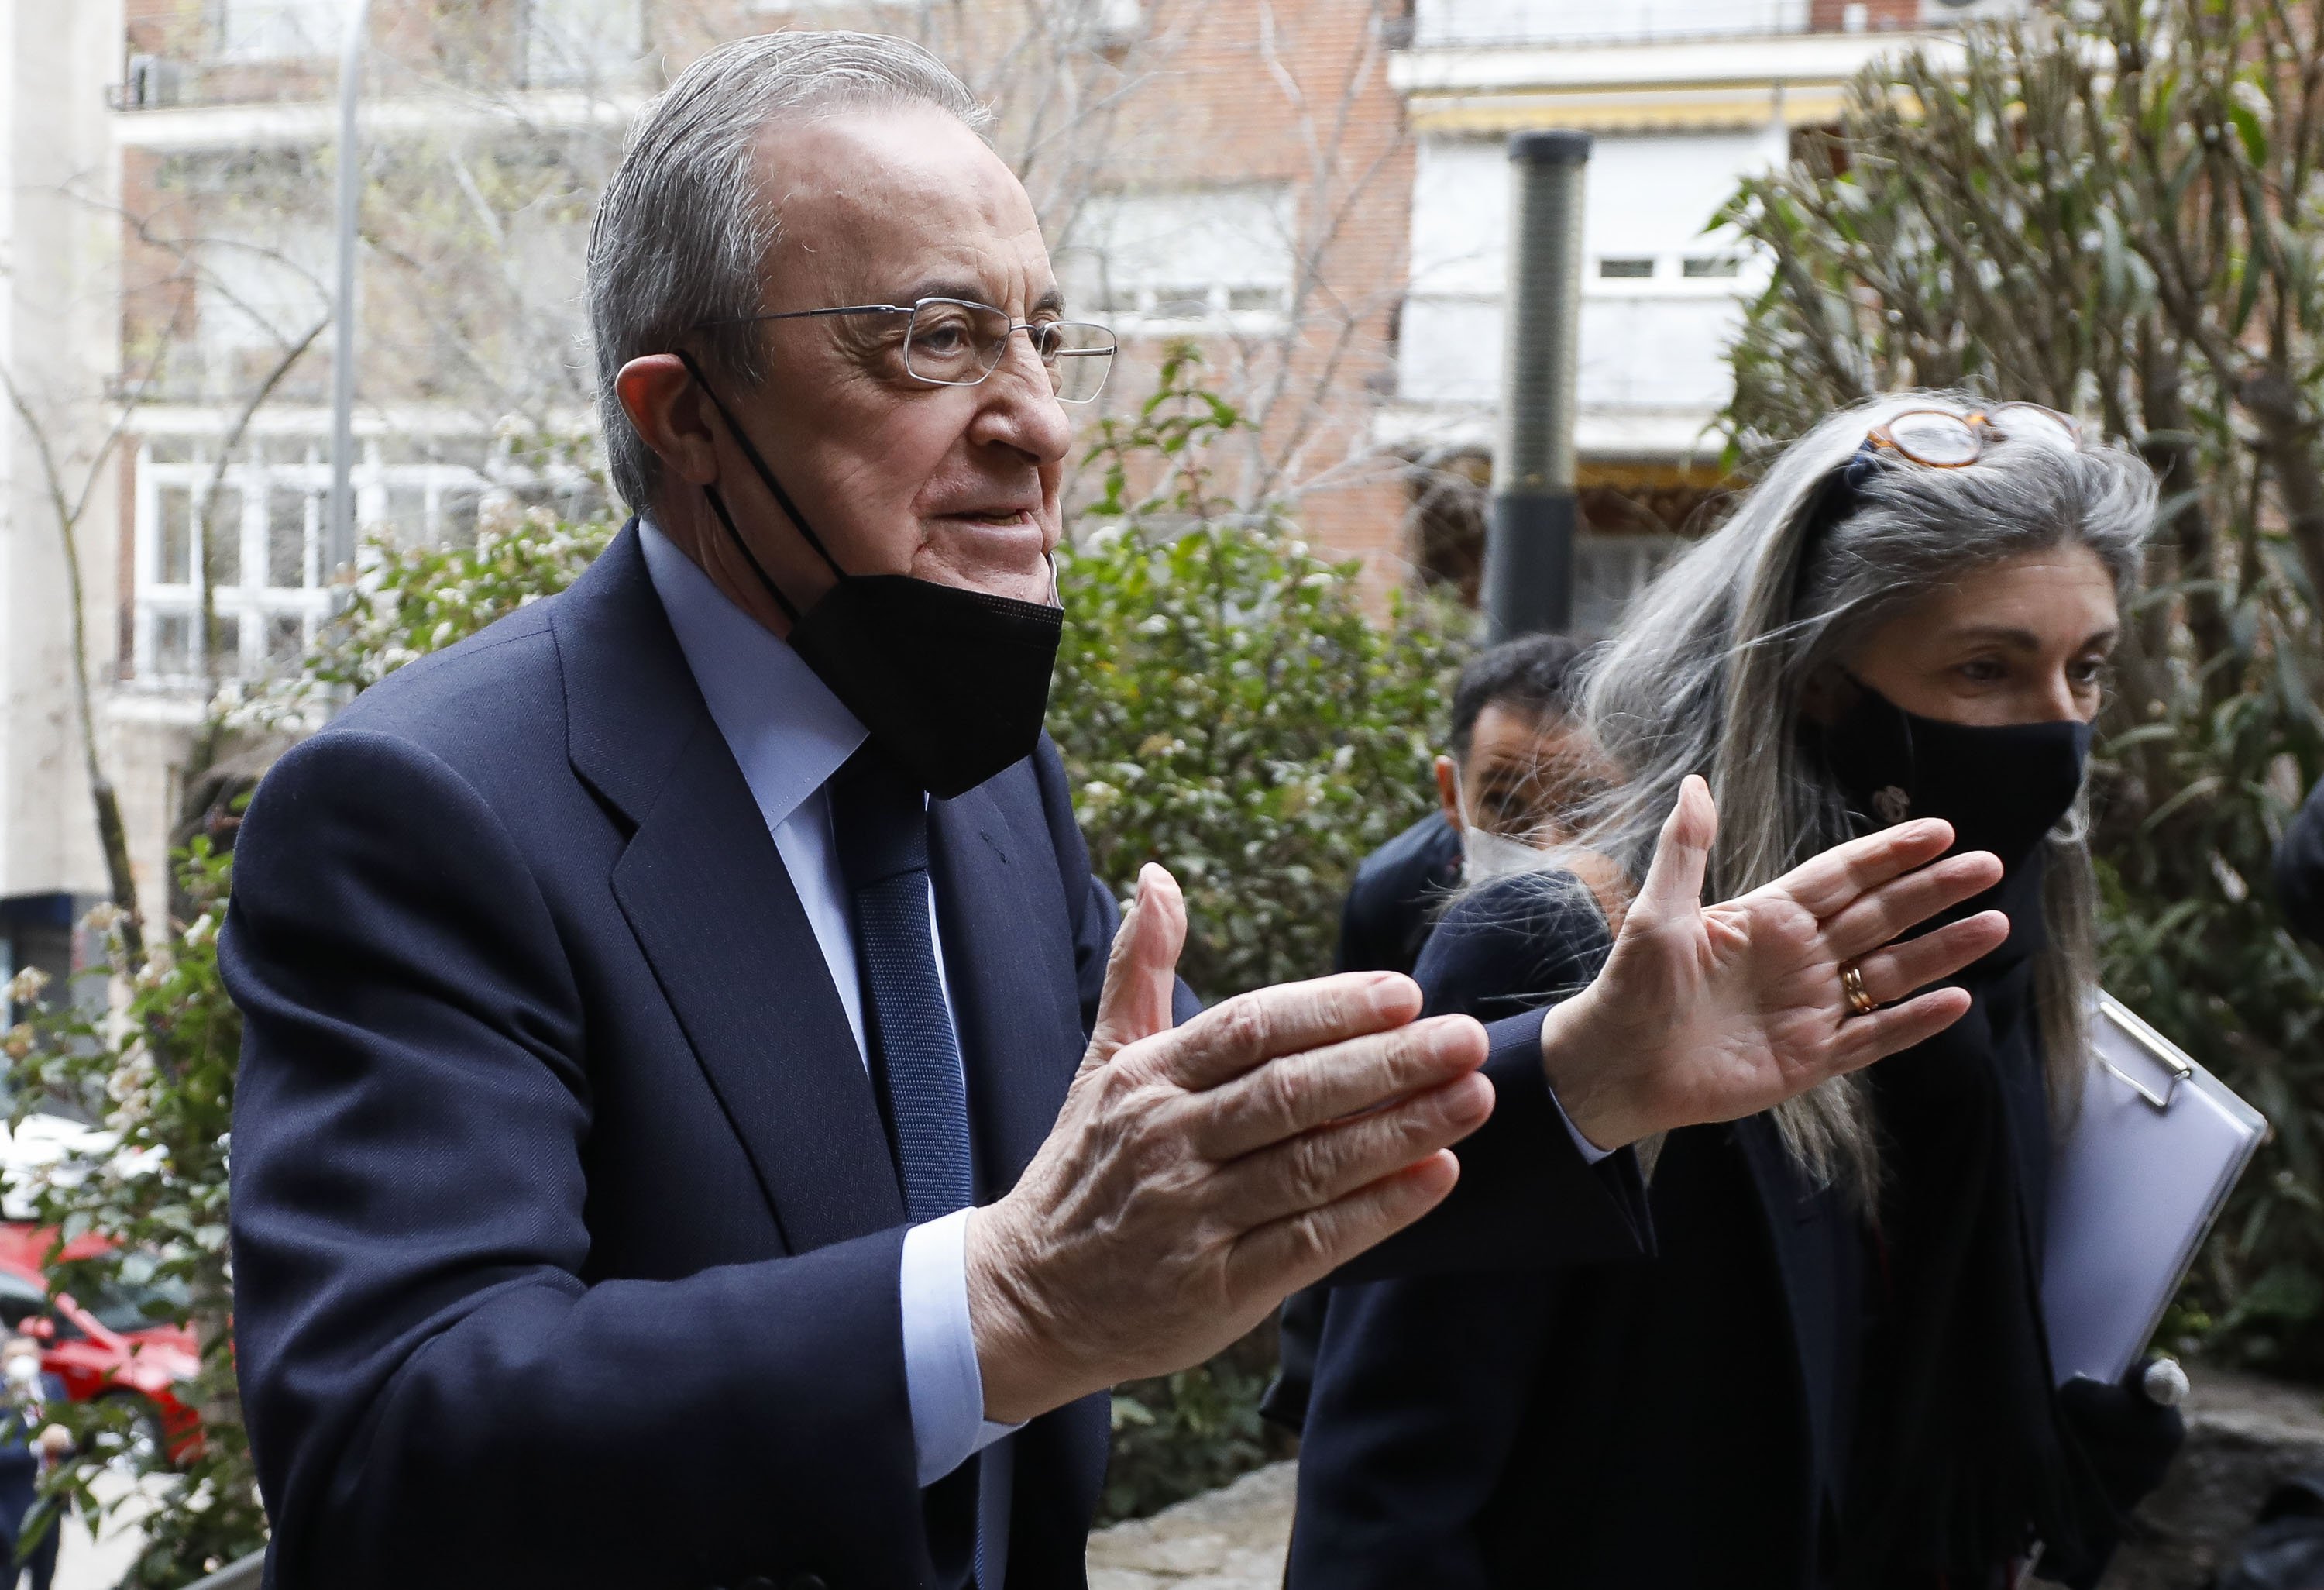 L'elegit de Florentino Pérez per carregar-se Ancelotti ja fa 12 mesos que estudia castellà